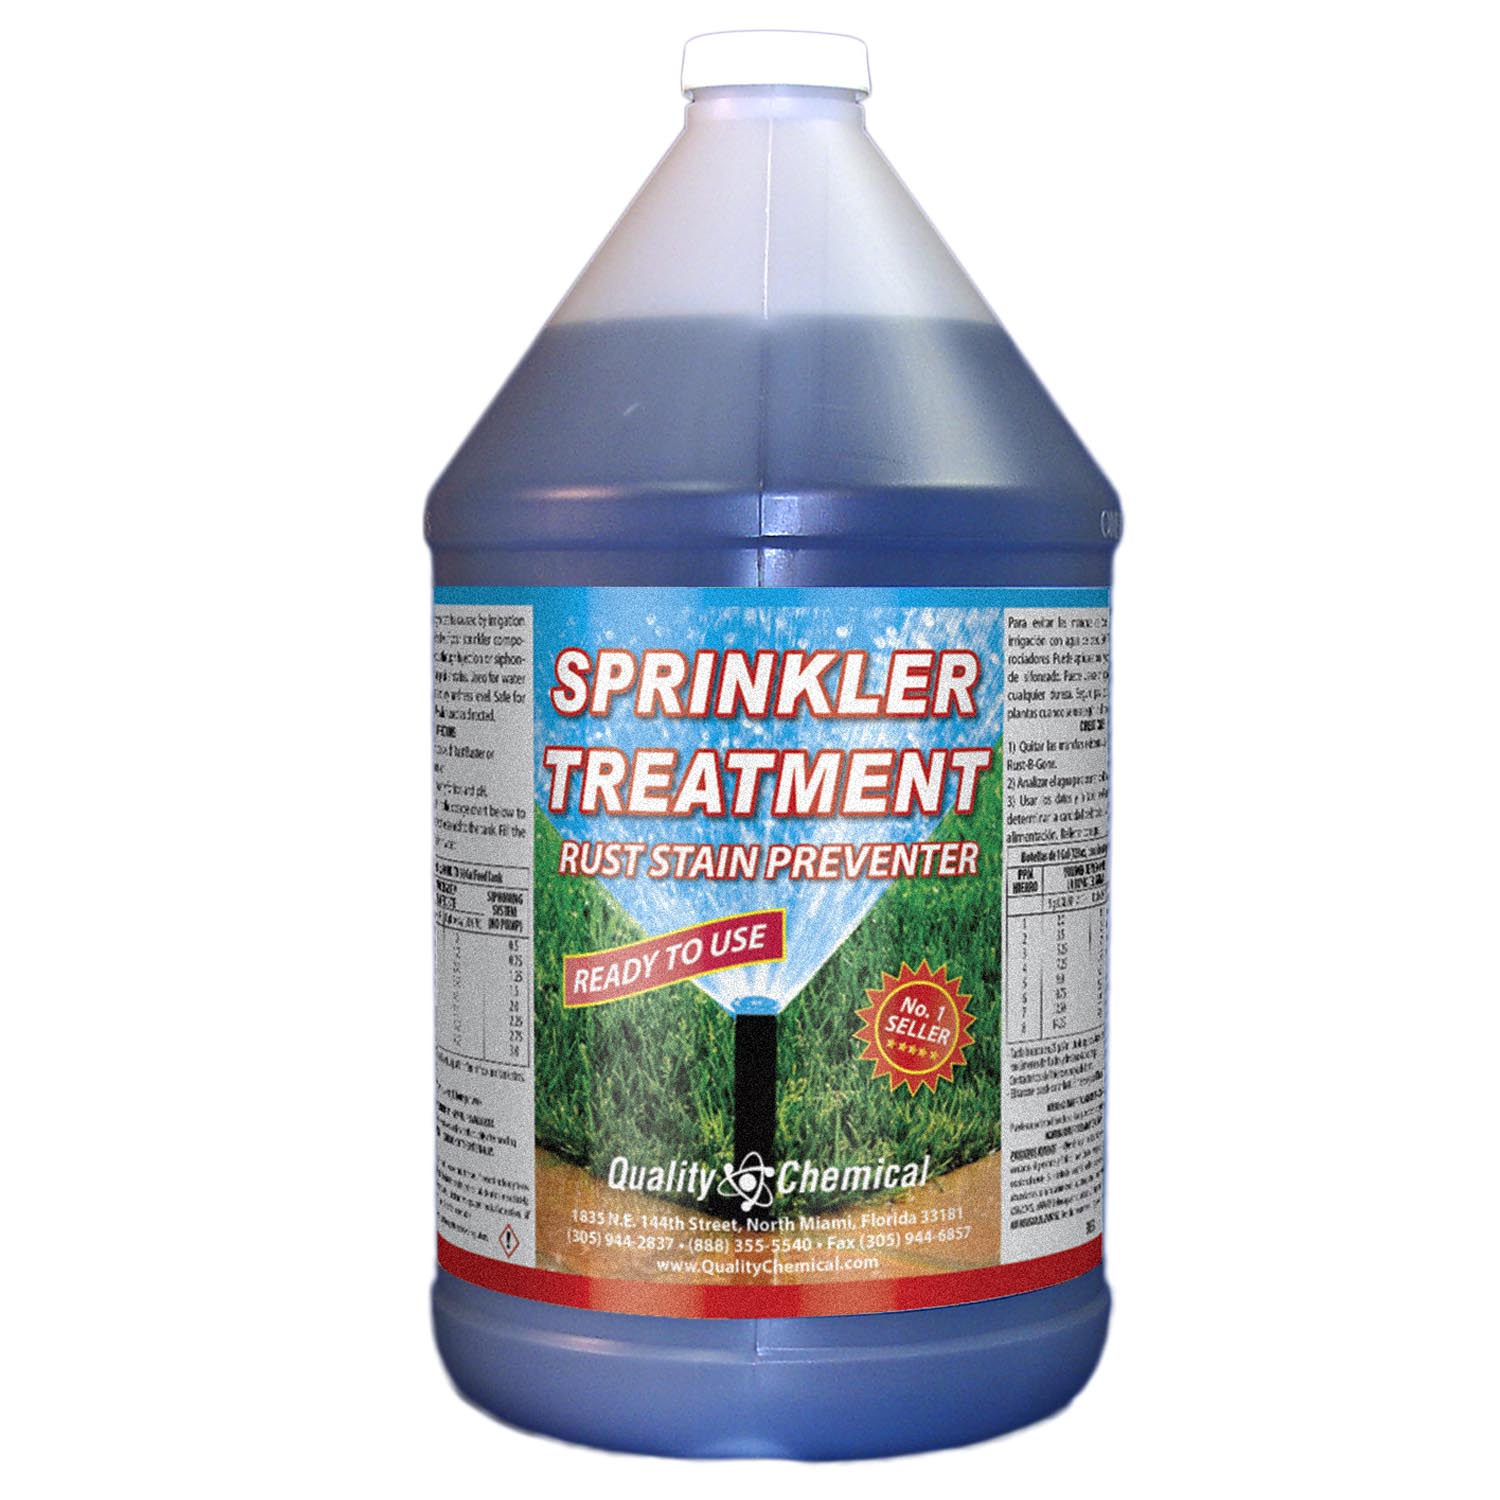 Sprinkler Treatment Rust Stain Preventor